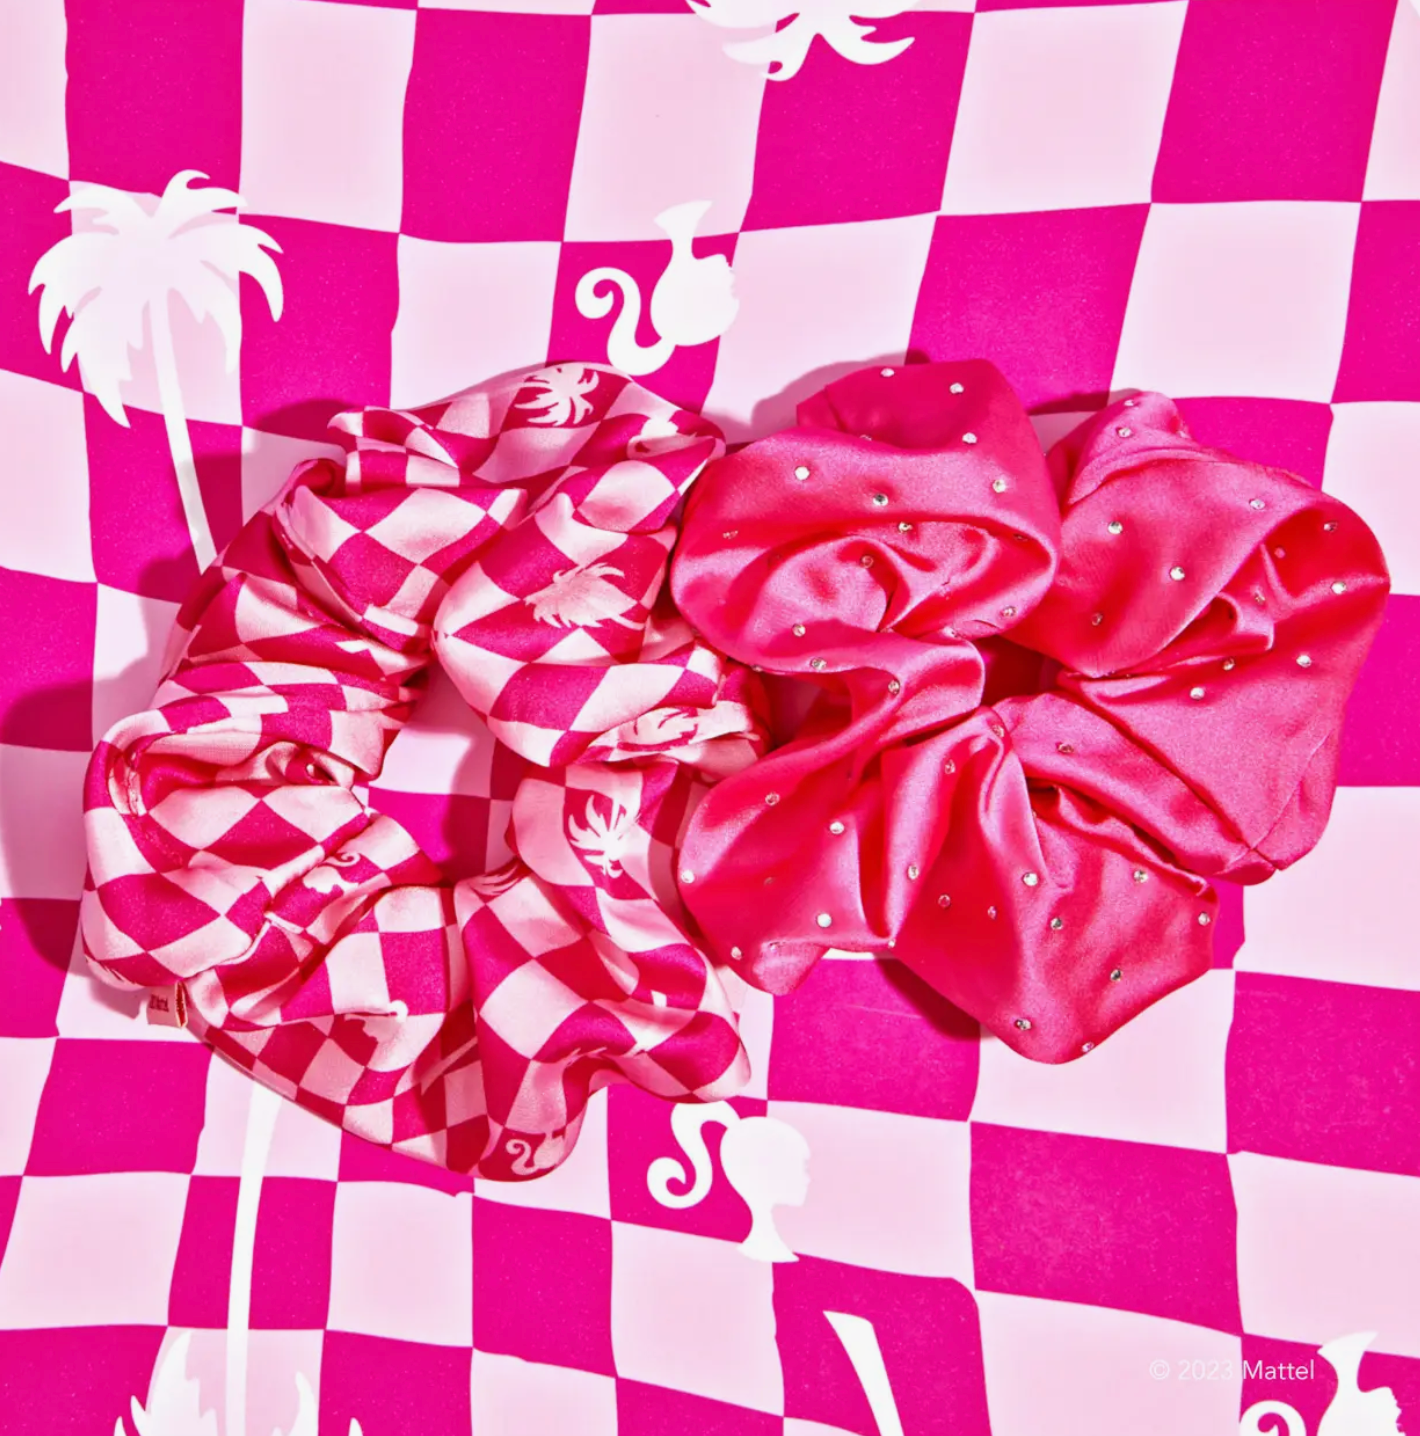 Barbie X Kitsch Satin Brunch Scrunchies 2pc Set